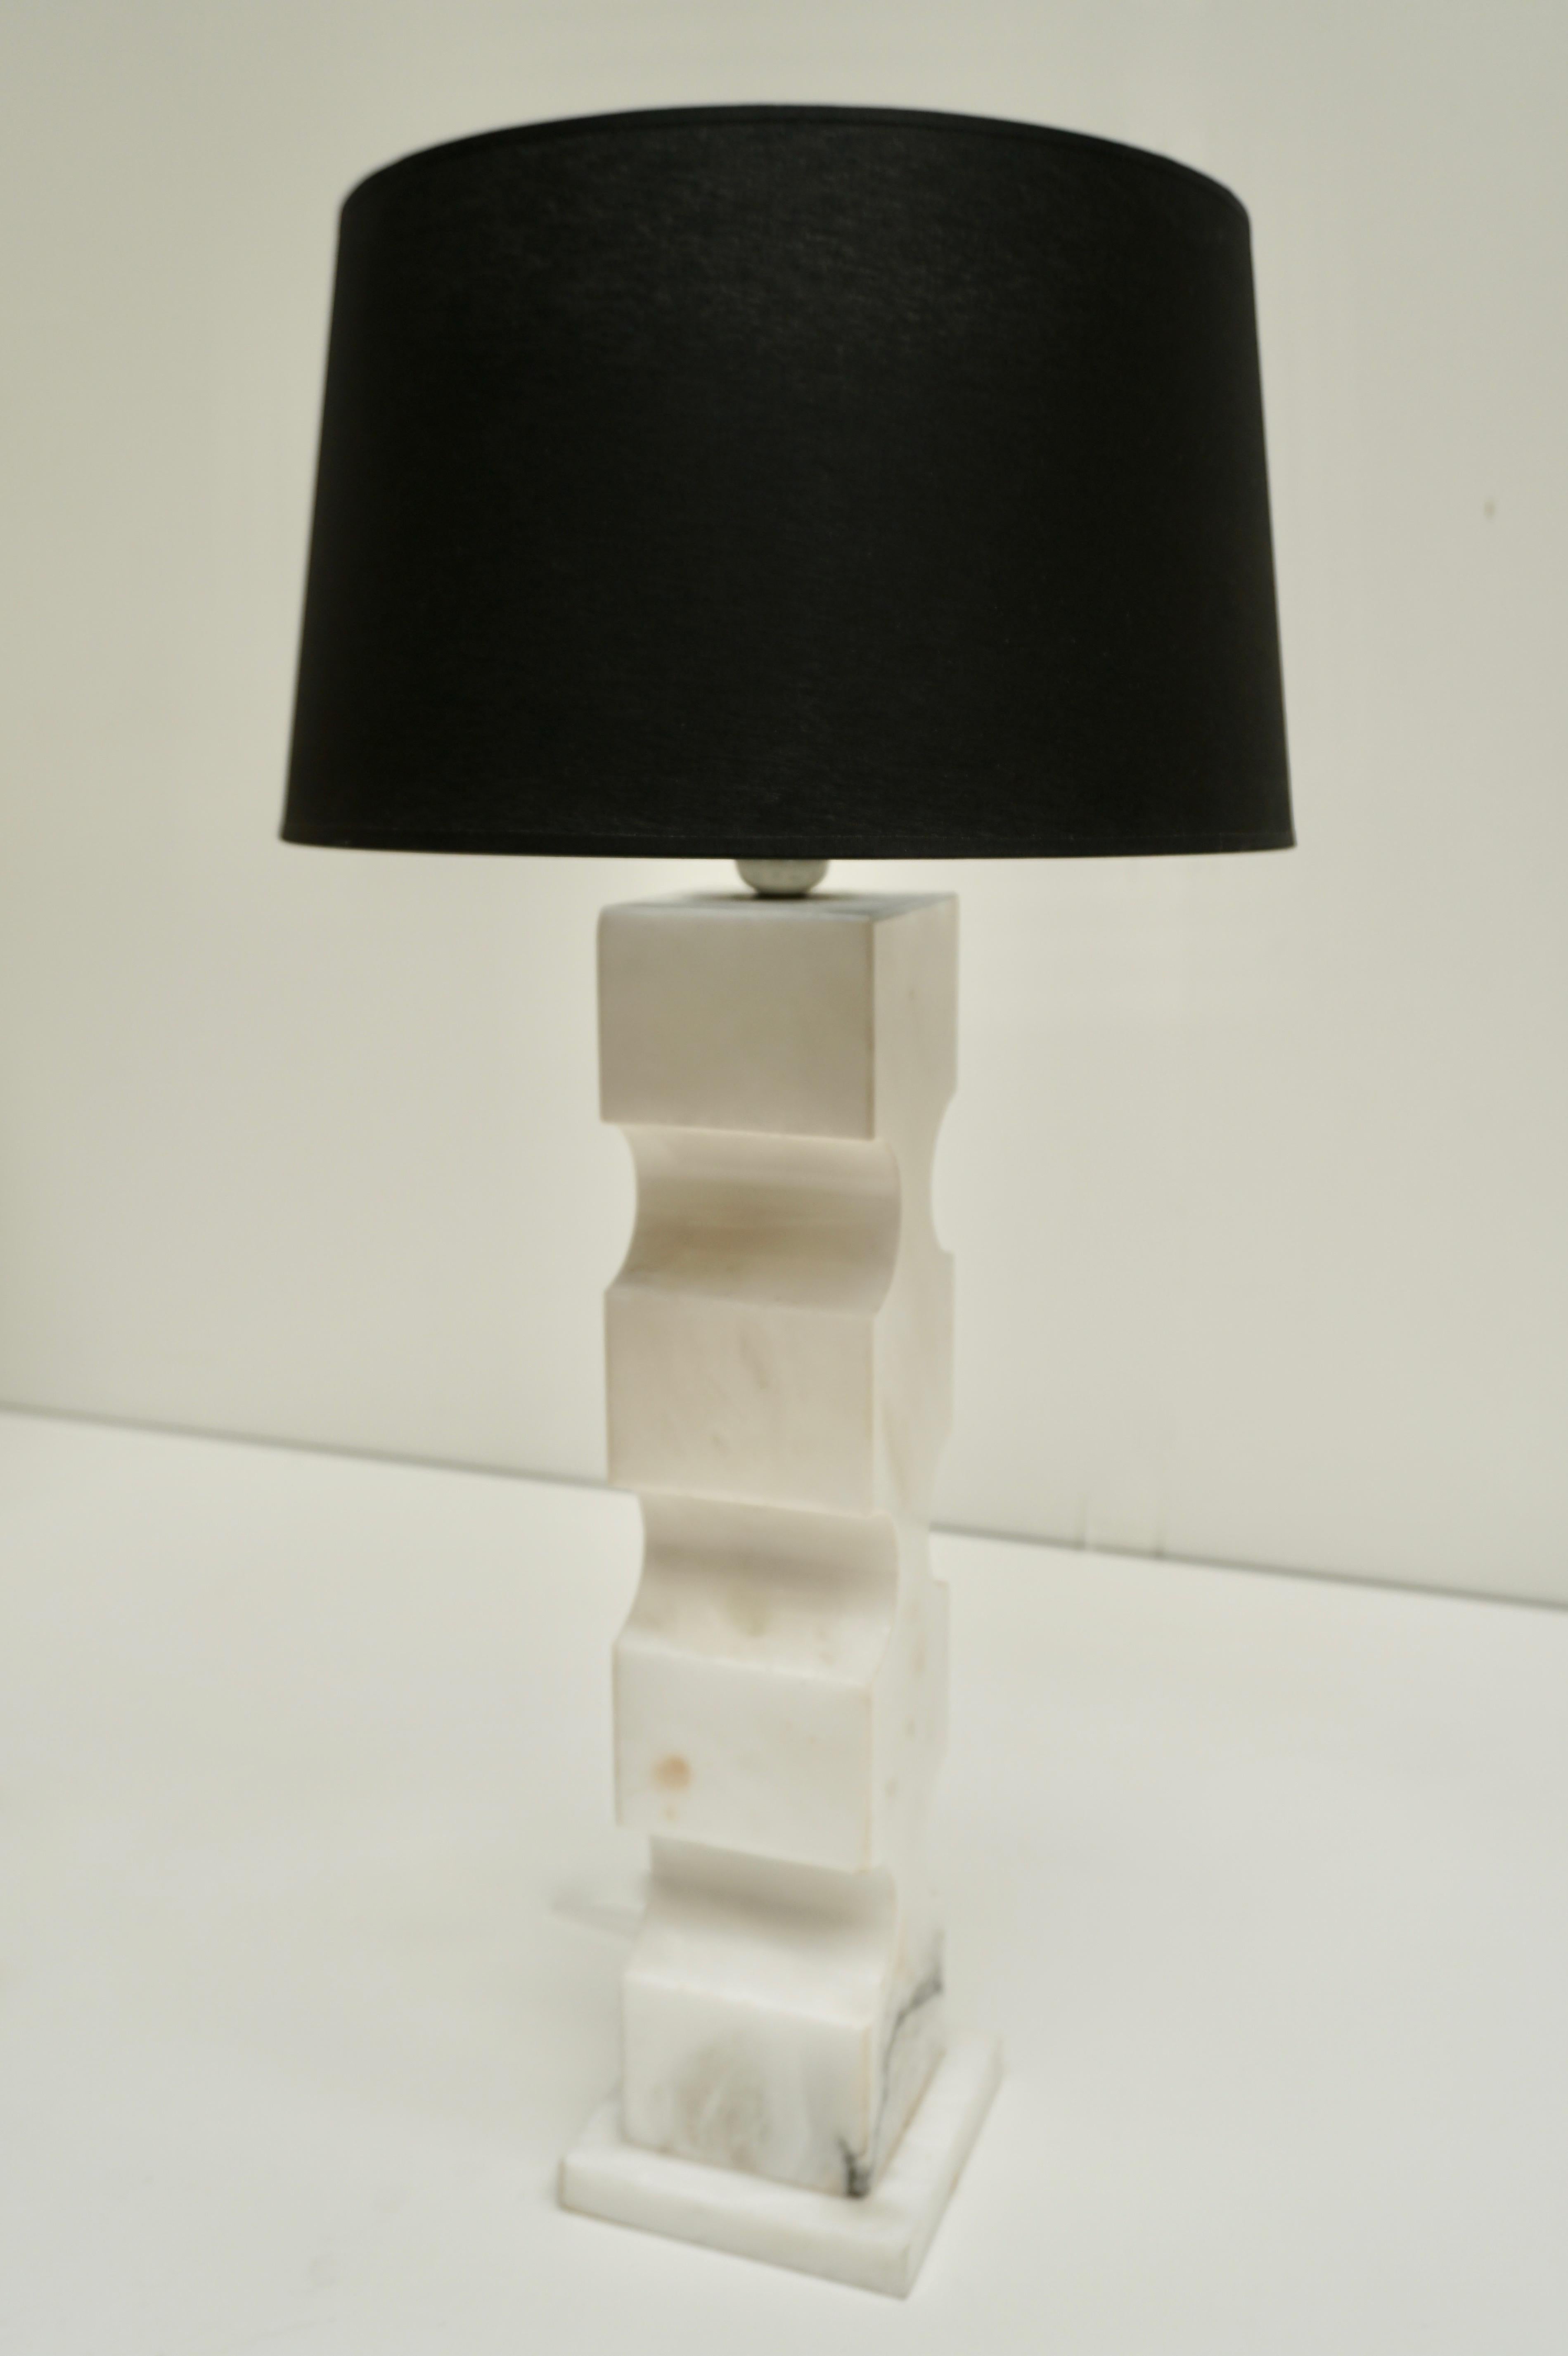 Lampe de table en marbre italien.
Mesures : Hauteur avec abat-jour 73 cm. Diamètre de l'abat-jour 35 cm.
La hauteur de la lampe avec raccord est de 56 cm, et sans raccord de 50 cm.
La largeur et la profondeur de la base sont de 14